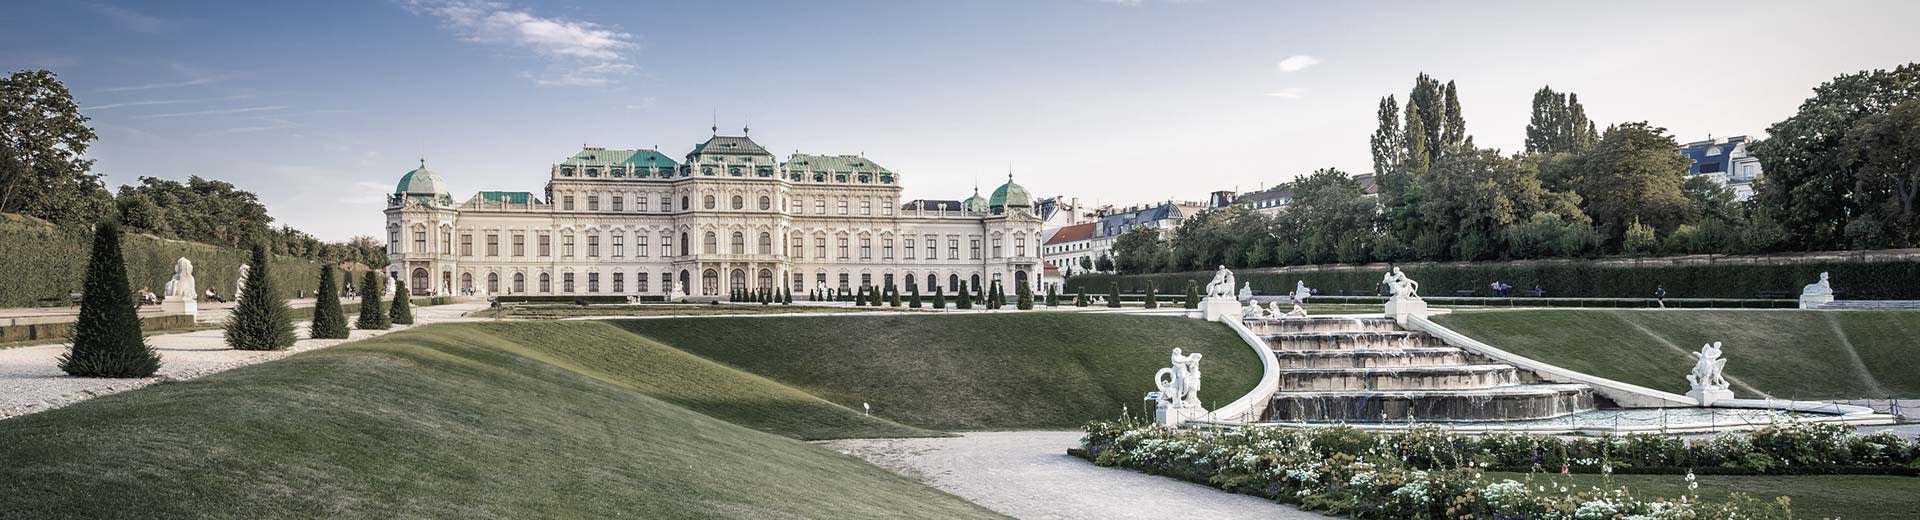 Le palais de Schönbrunn de renommée mondiale se trouve parmi les pelouses bien entretenues par une belle journée claire.